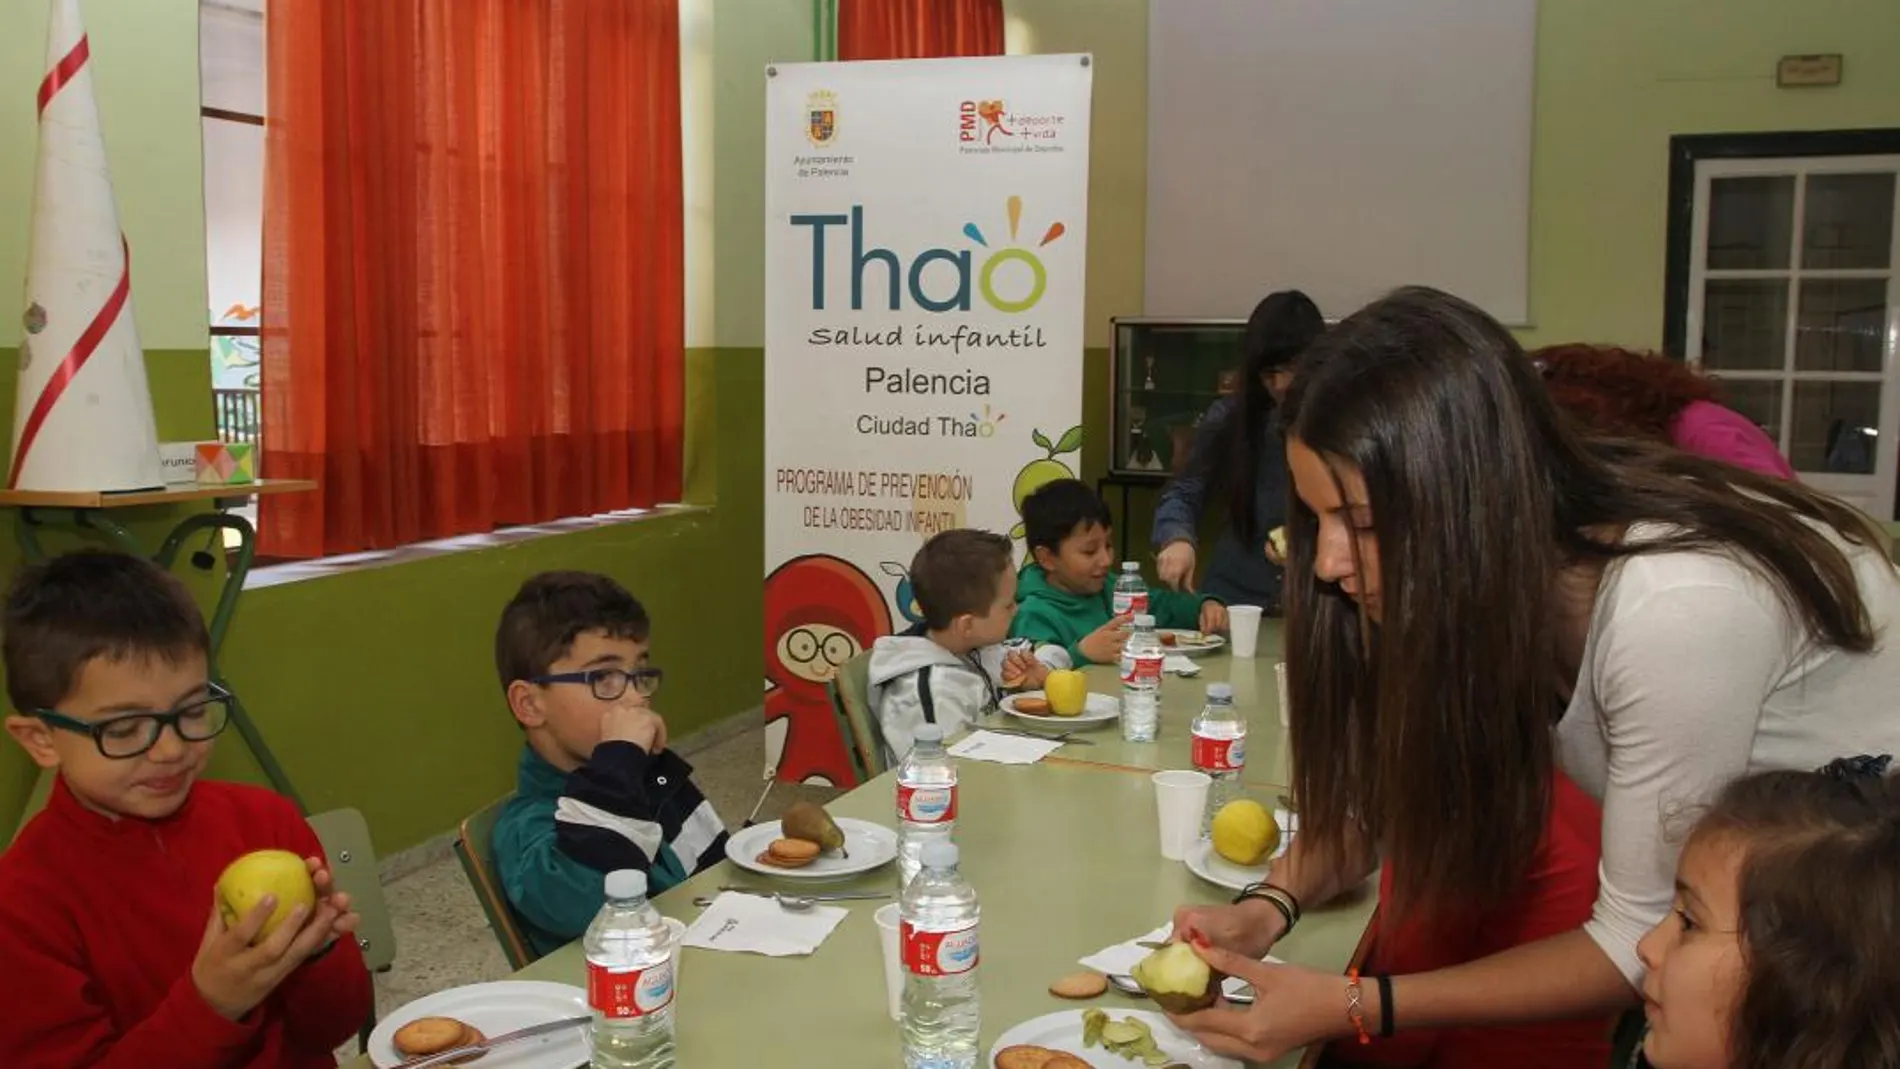 Un grupo de alumnos de un centro educativo de Palencia come fruta en el comedor escolar